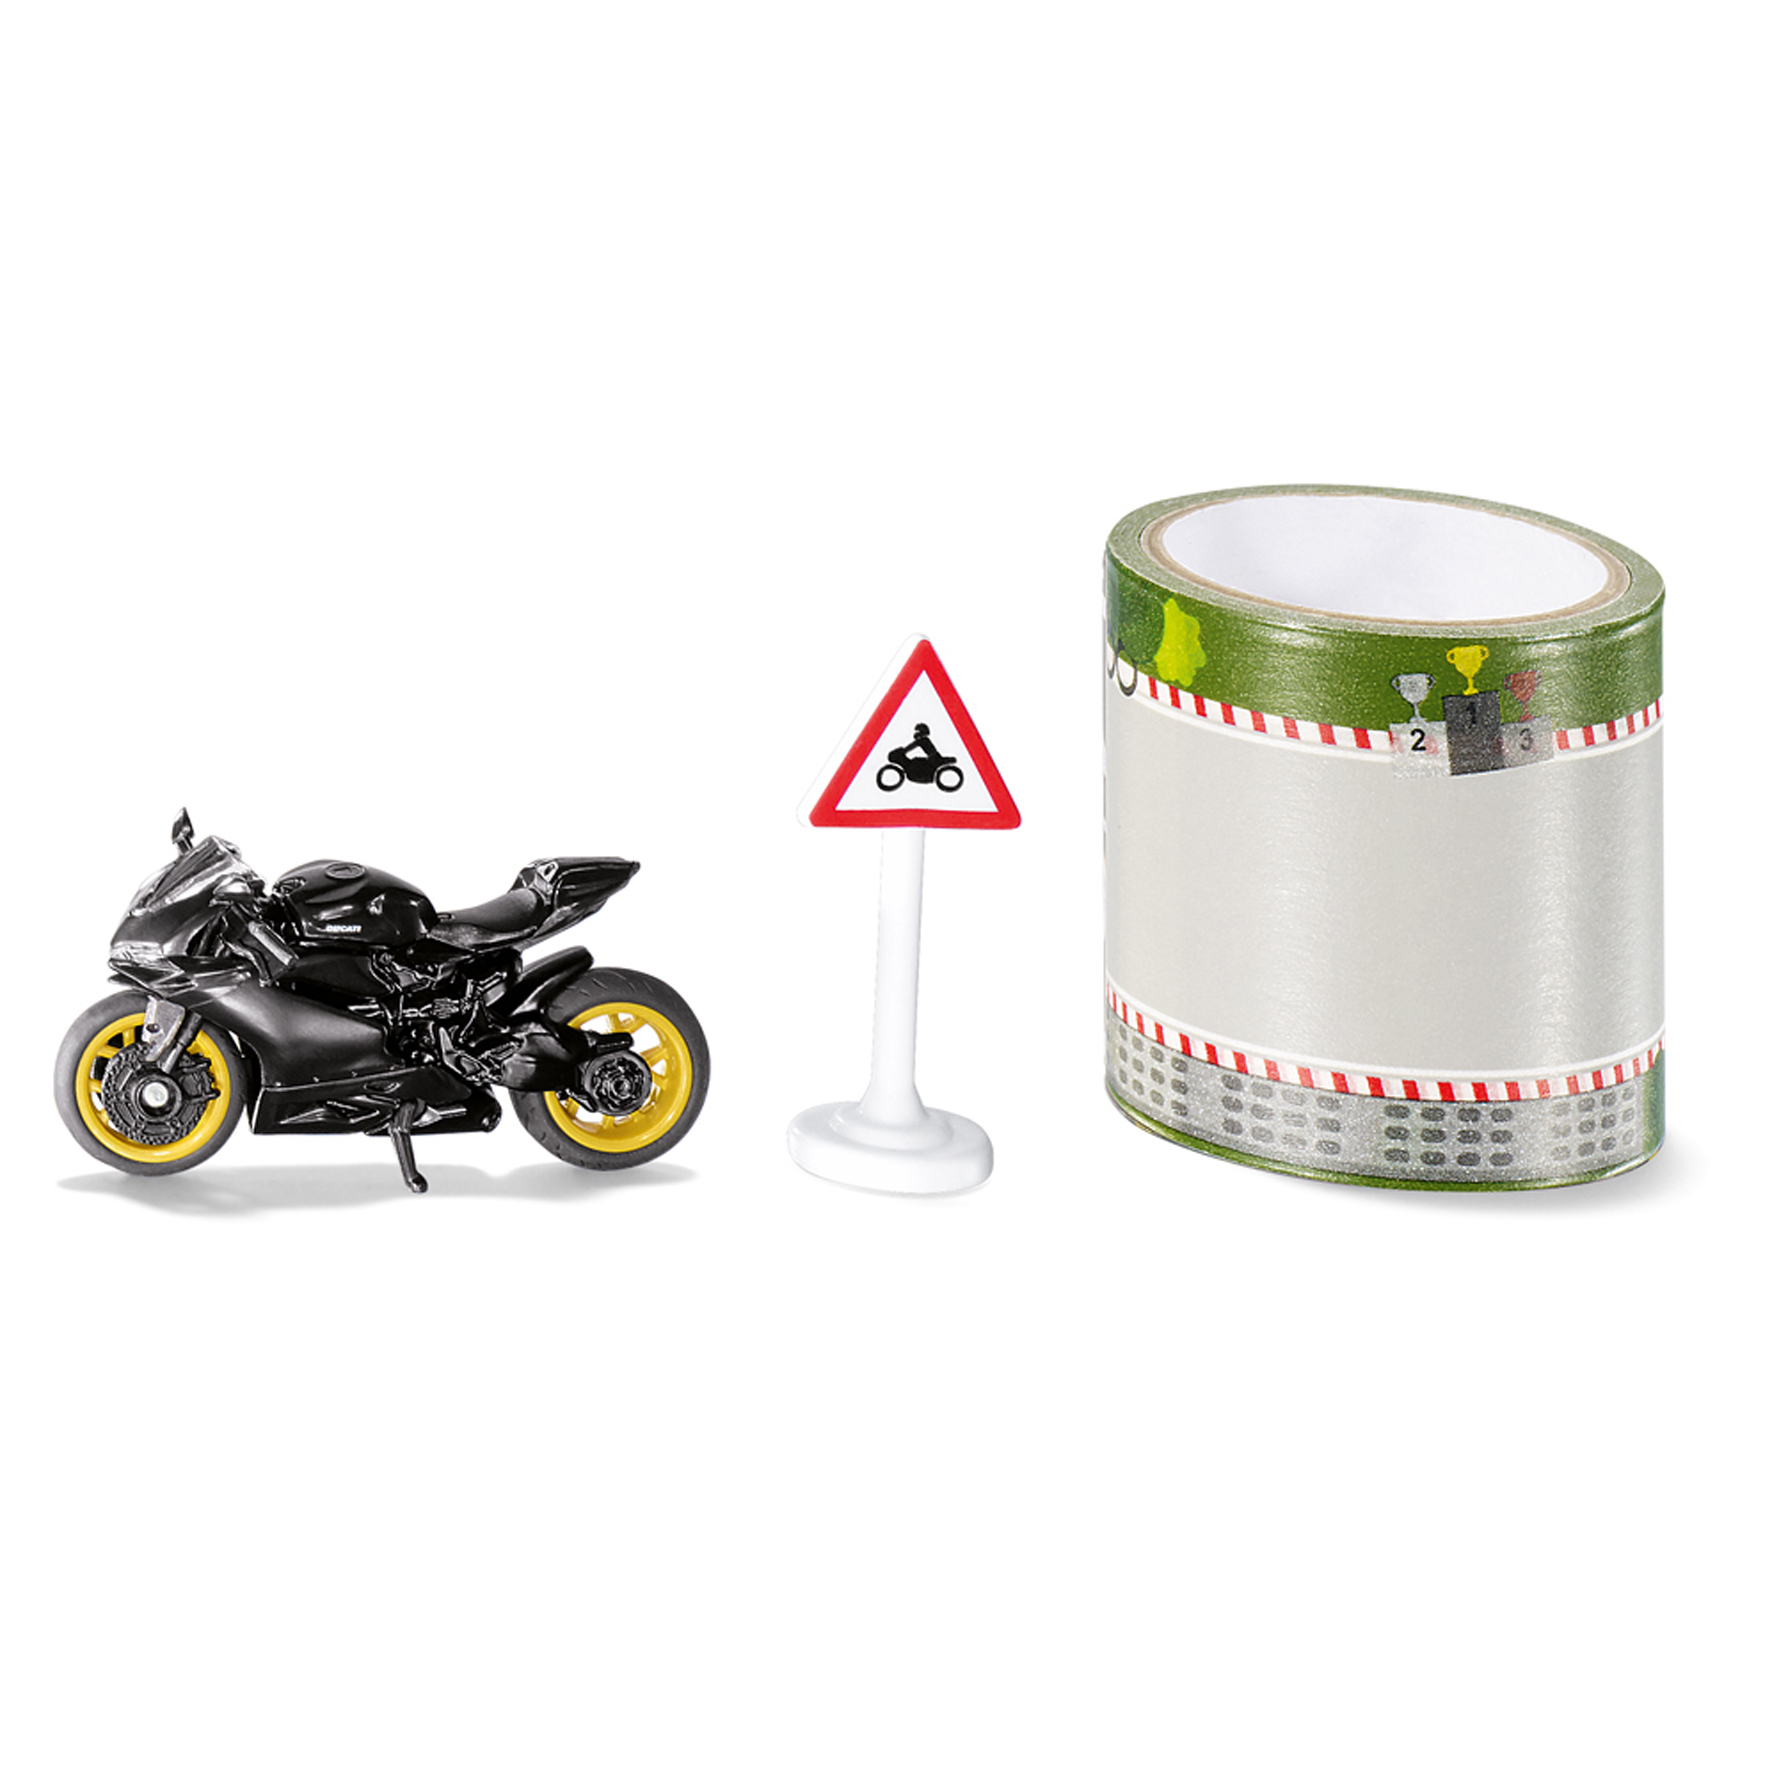 Motorrad & Gelände siku motorbike with sign & roadtape